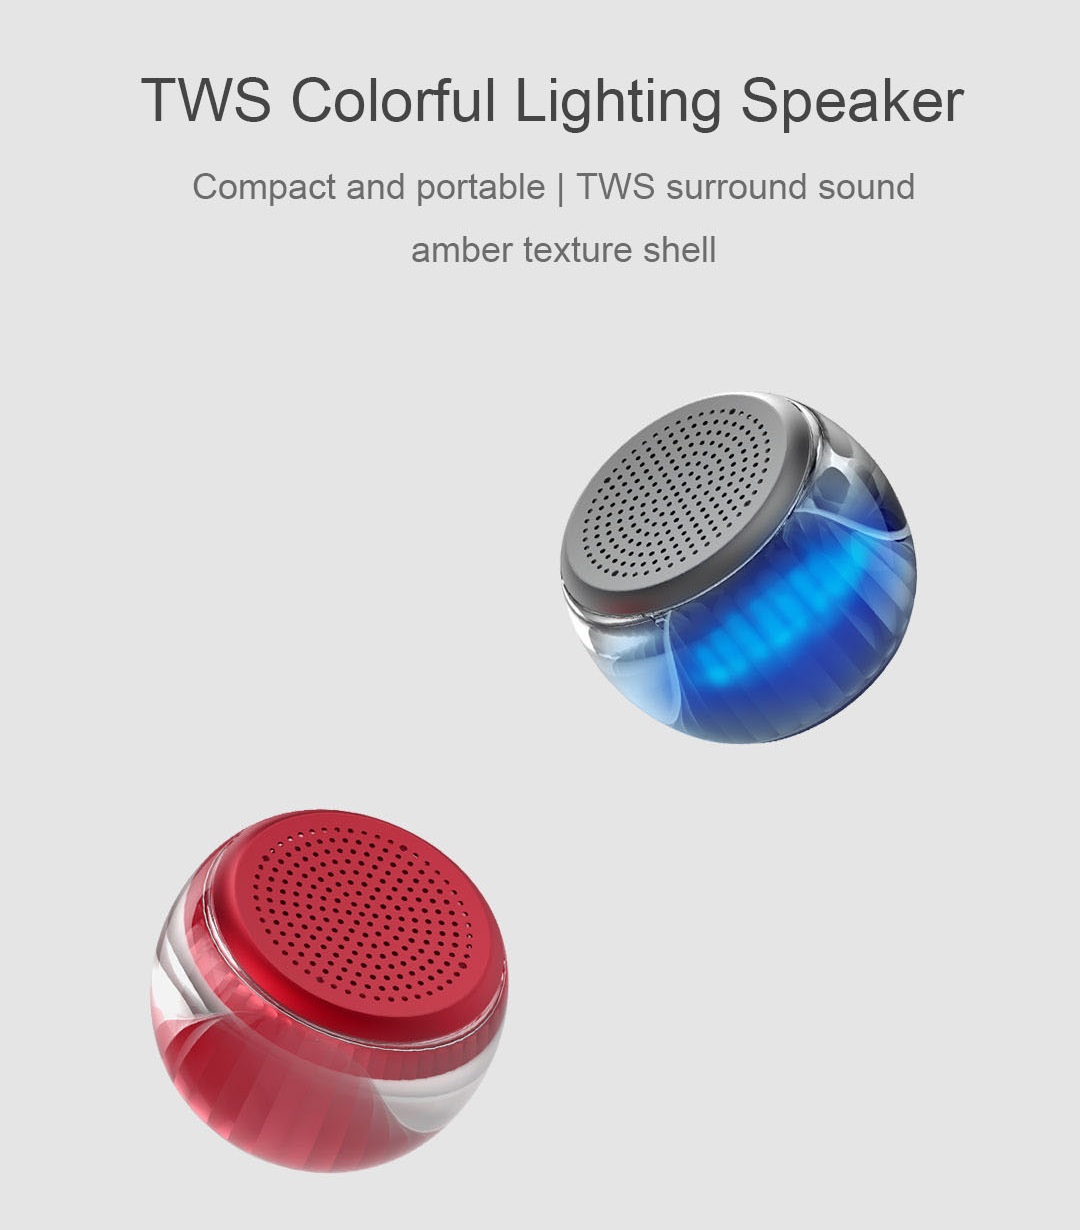 Velev-M07-Wireless-bluetooth-50-Speaker-Mini-Portable-Colorful-LED-Light-TWS-Function-Stereo-Speaker-1561907